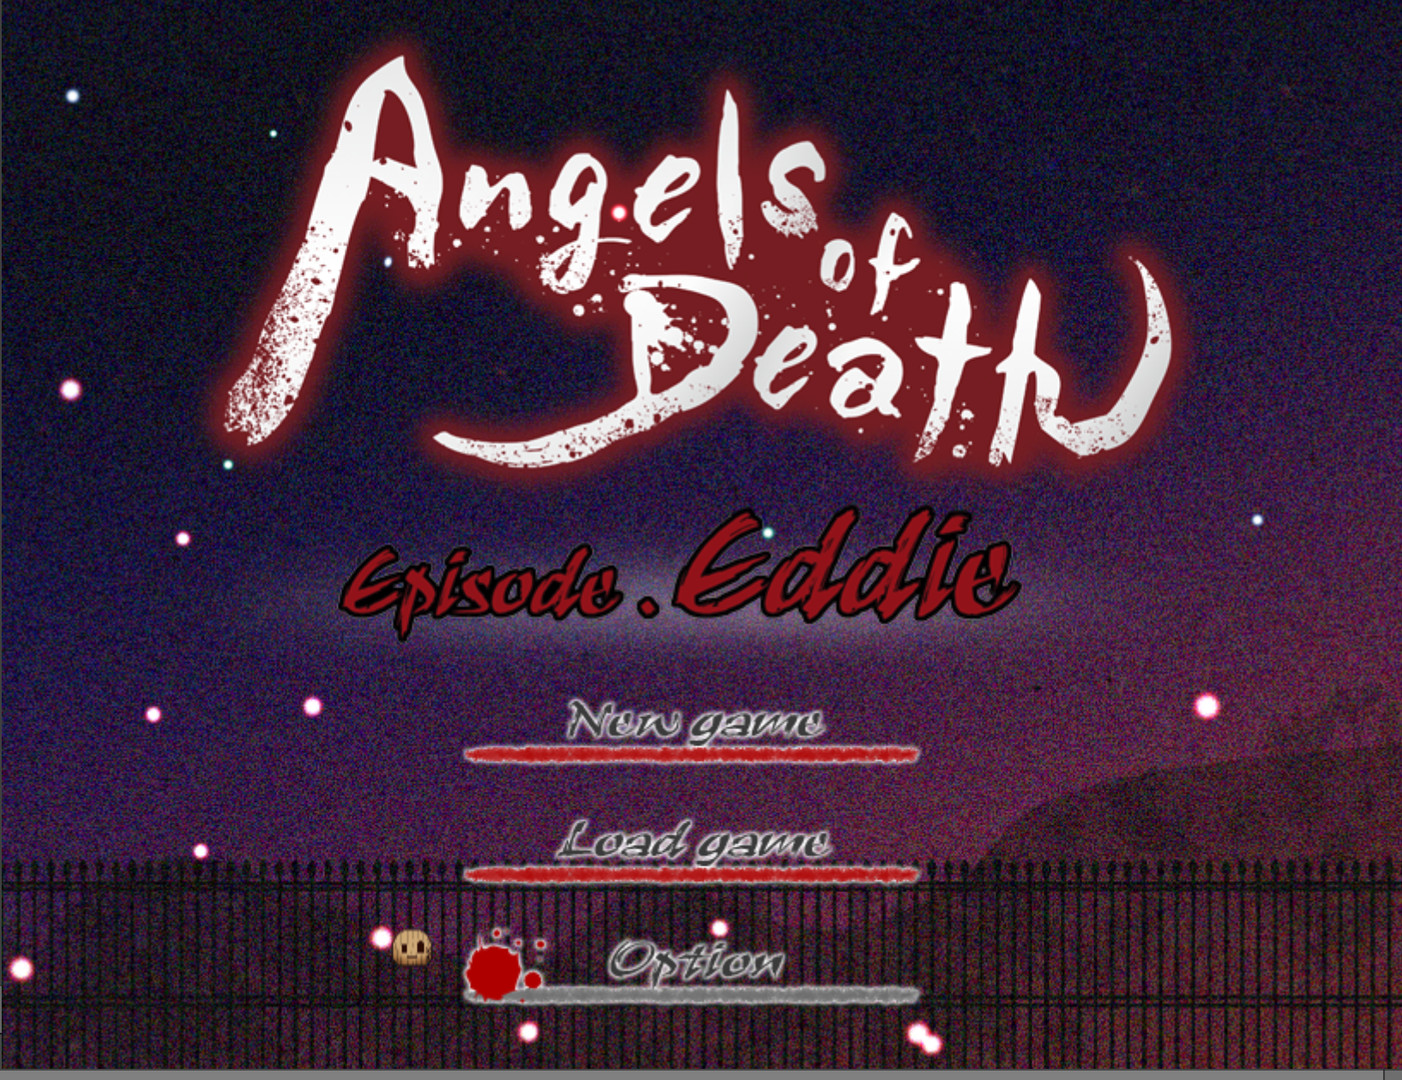 Angels Of Death Episode.Eddie Steam CD Key